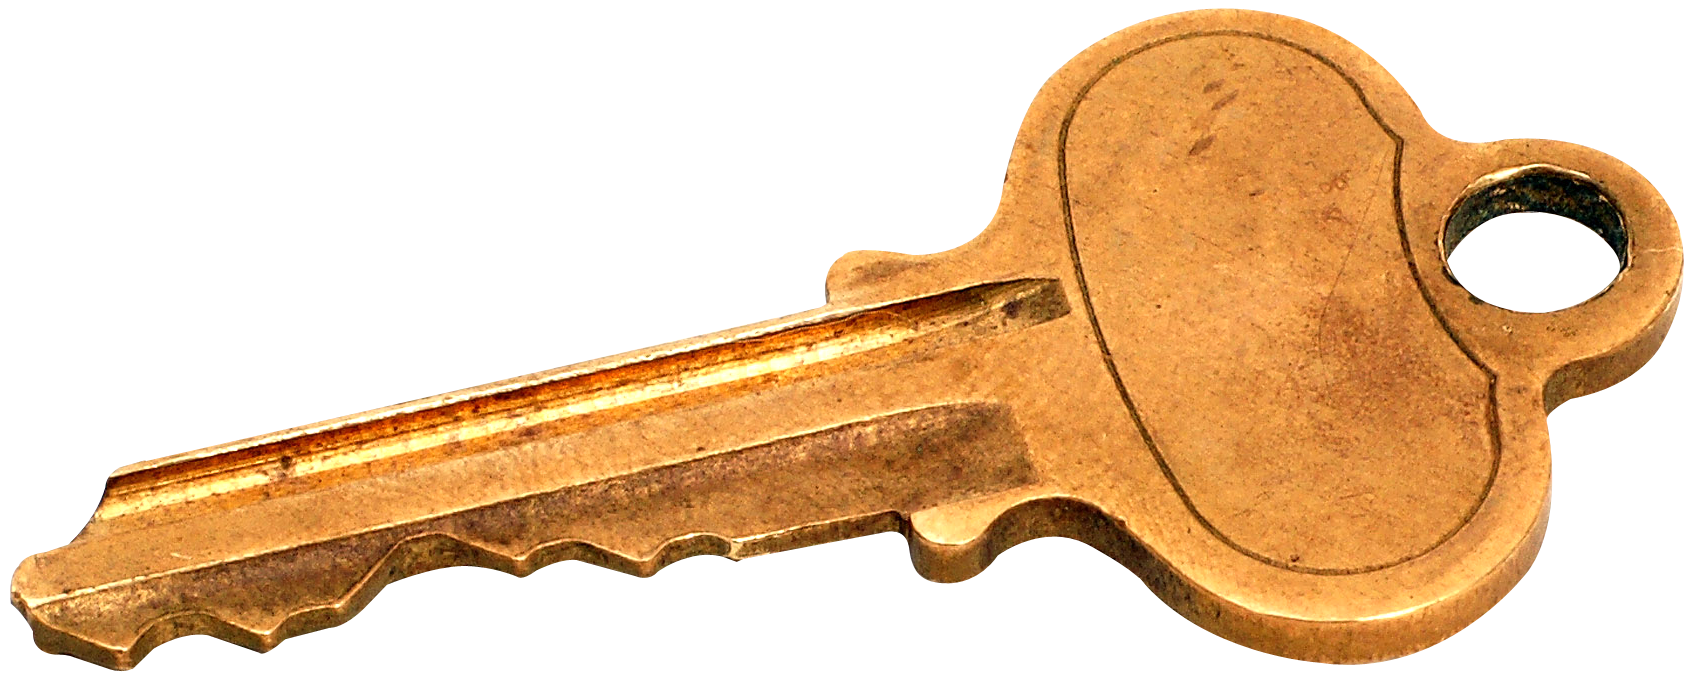 A Close Up Of A Key